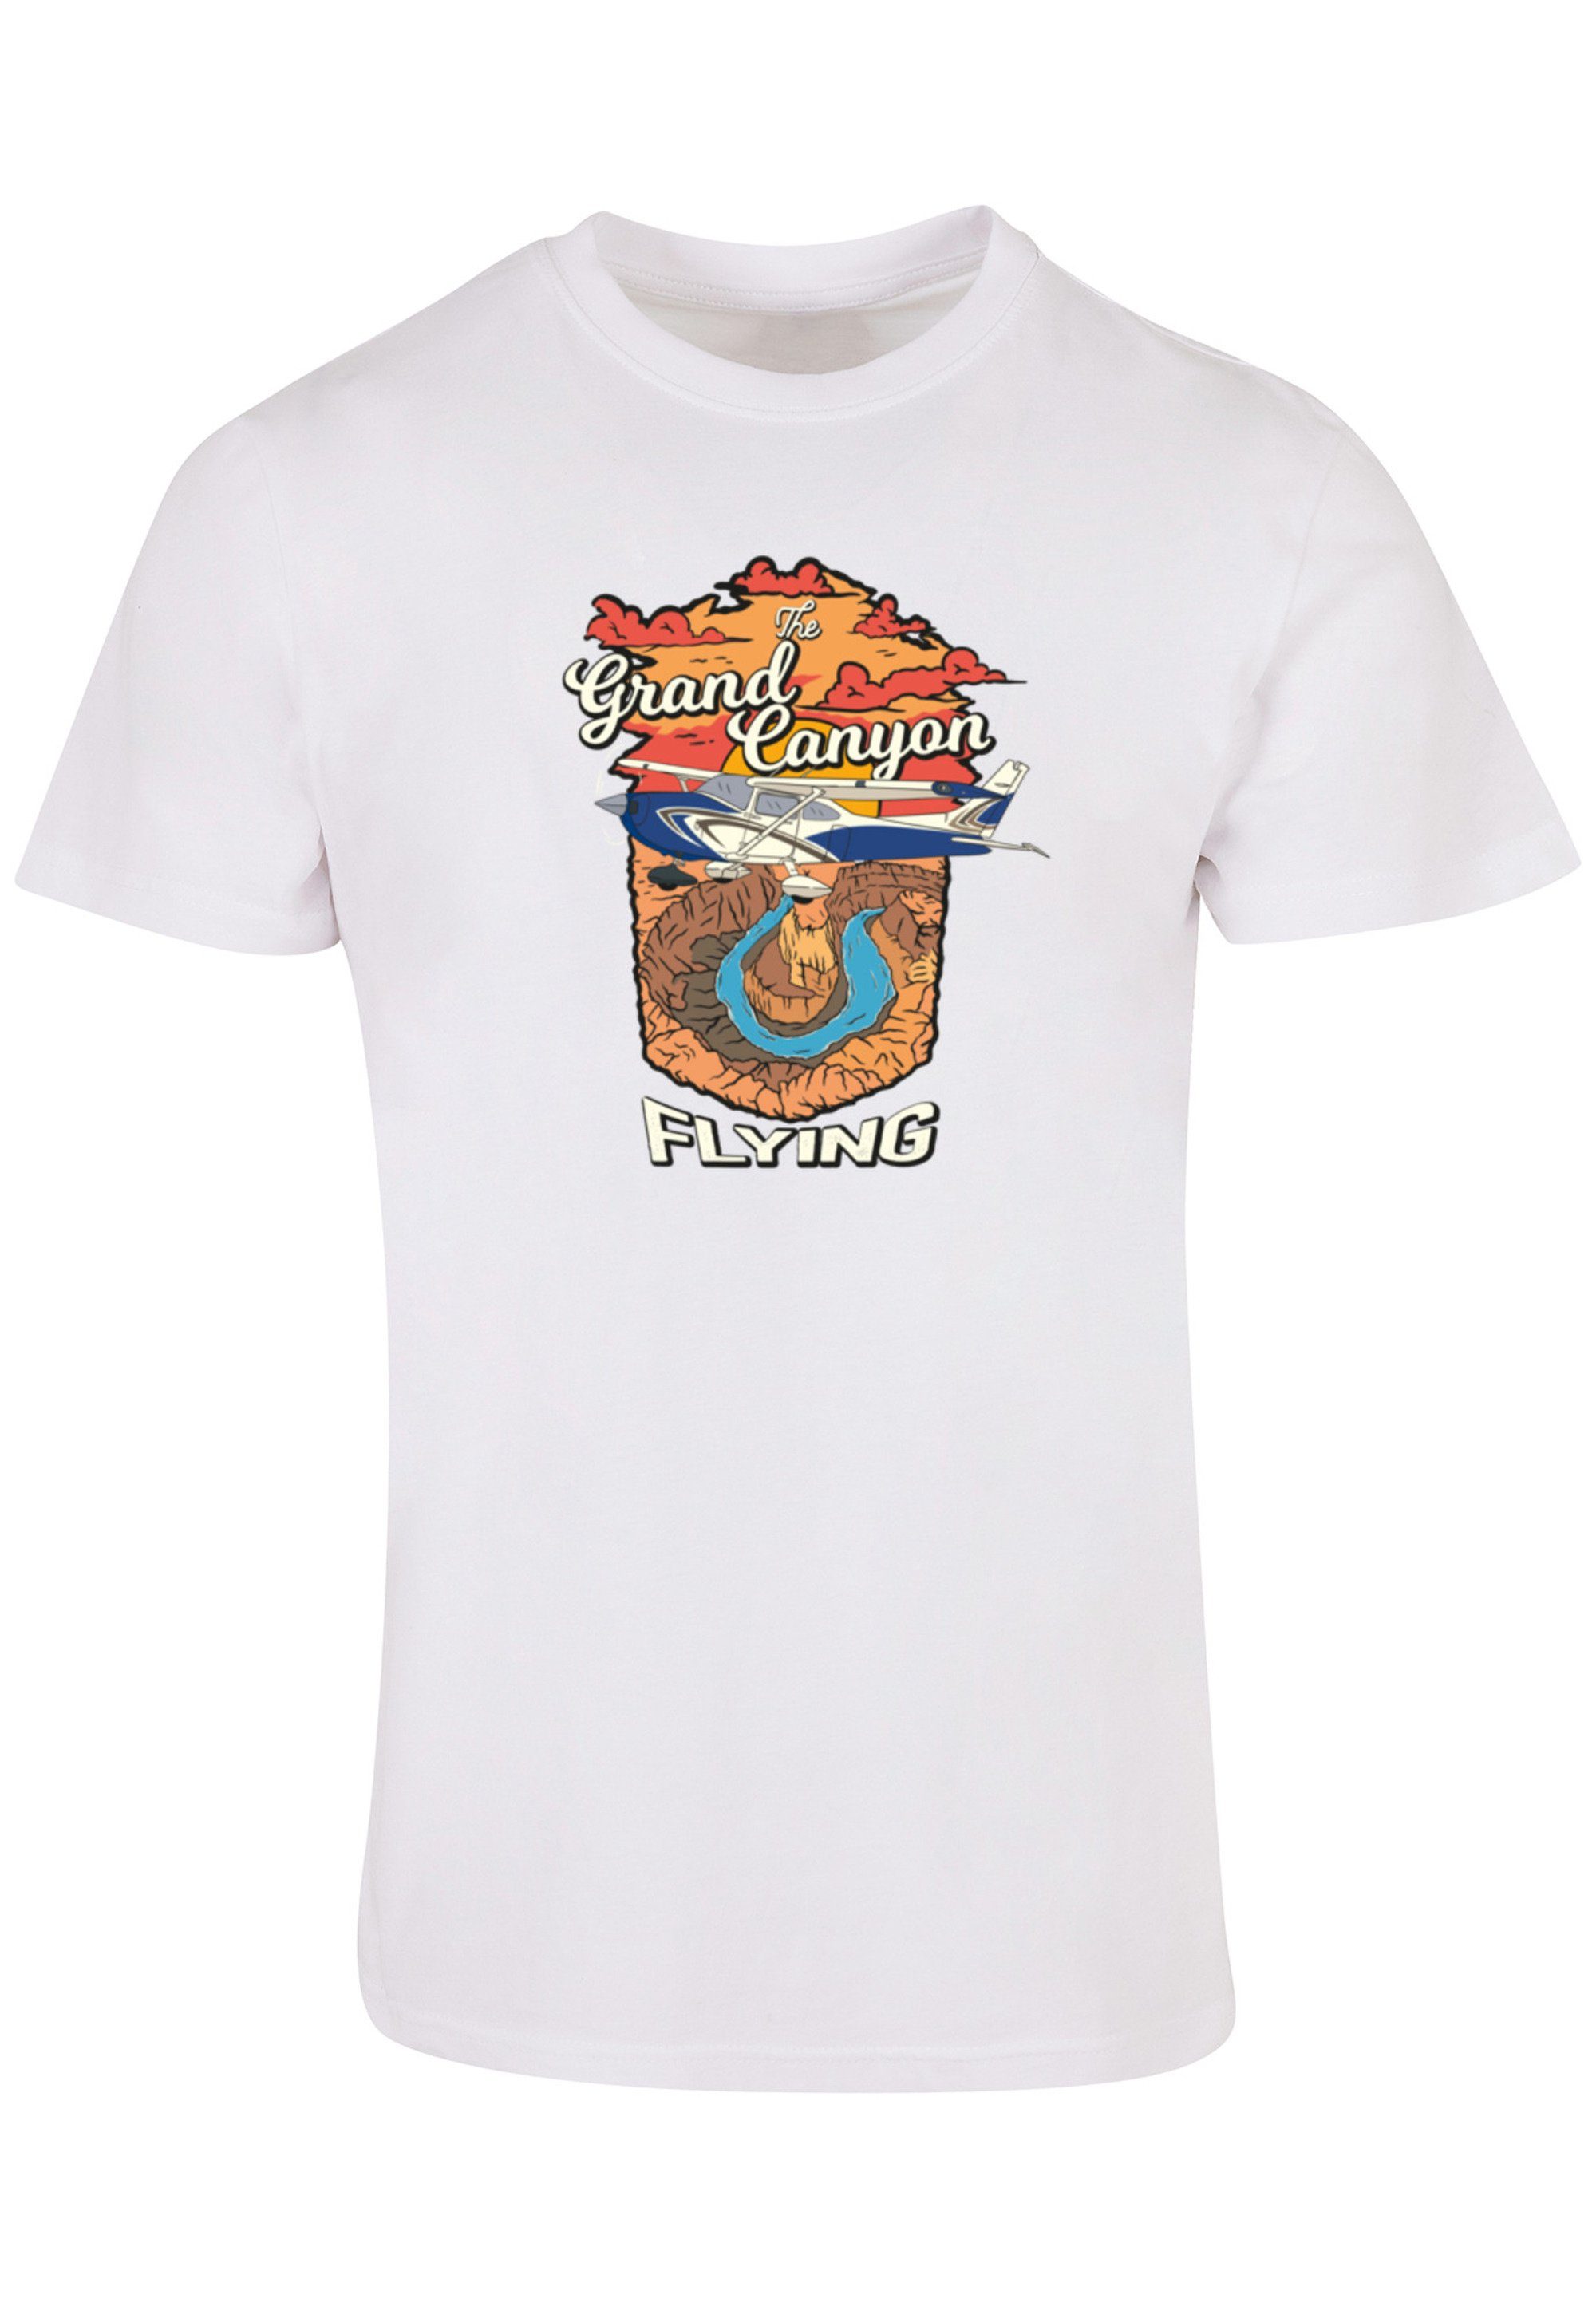 Flying T-Shirt Print F4NT4STIC weiß Canyon Grand